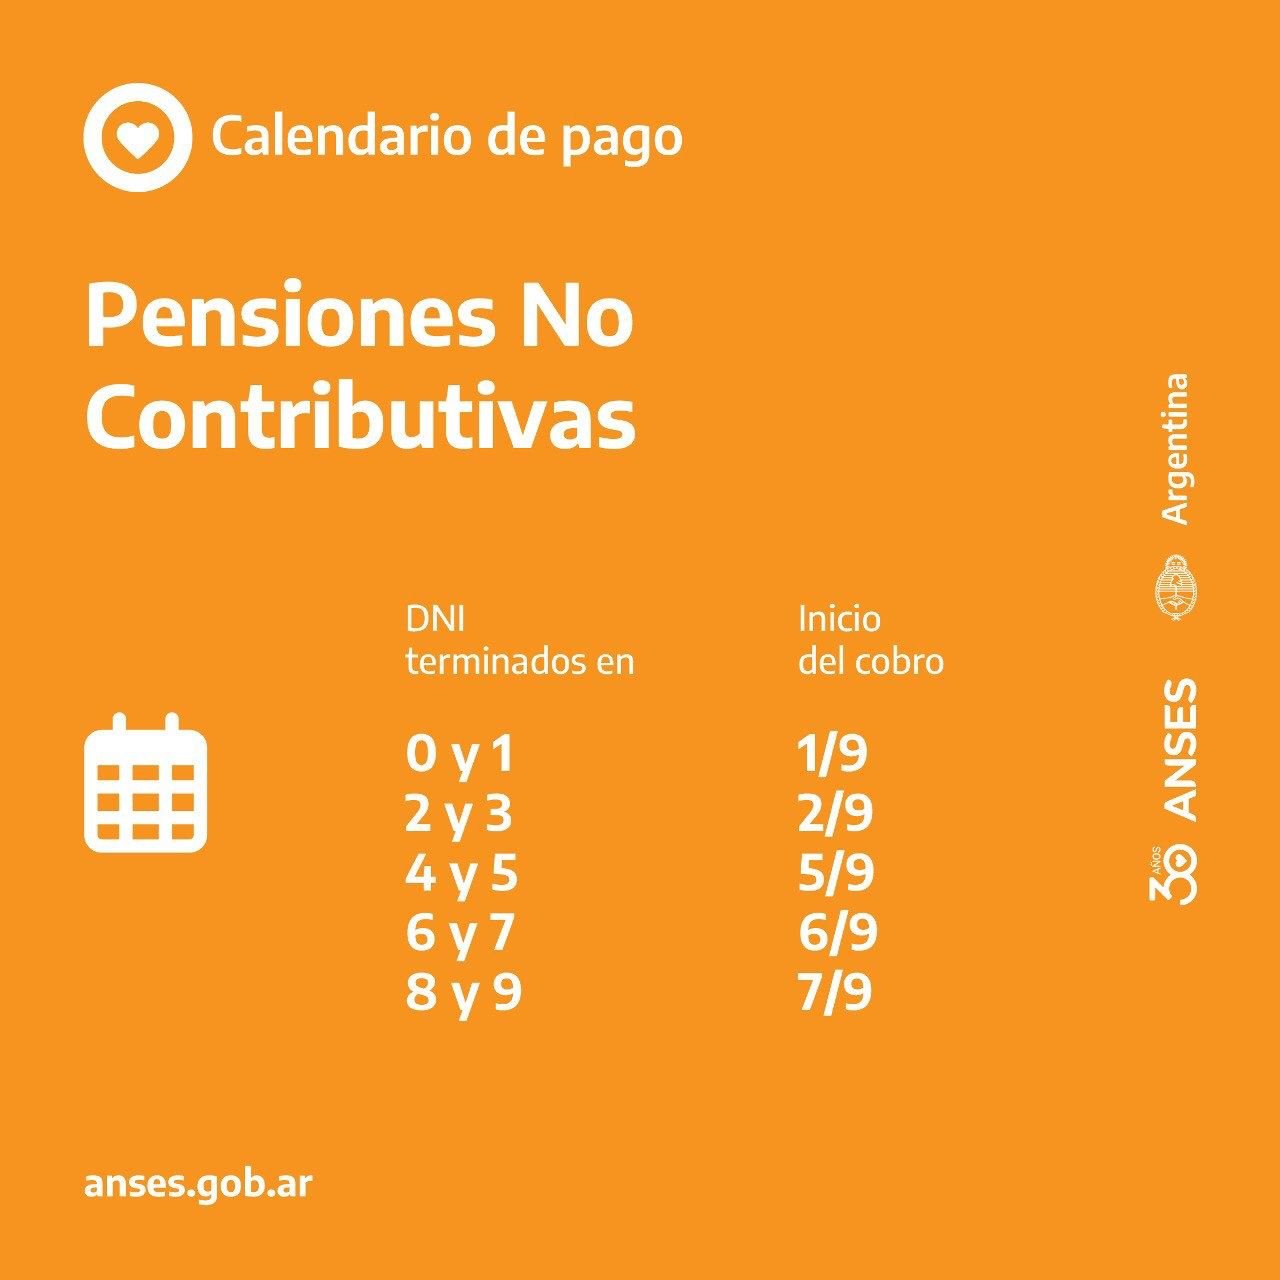 ANSES informa que hoy comienza el calendario de pagos de las Pensiones